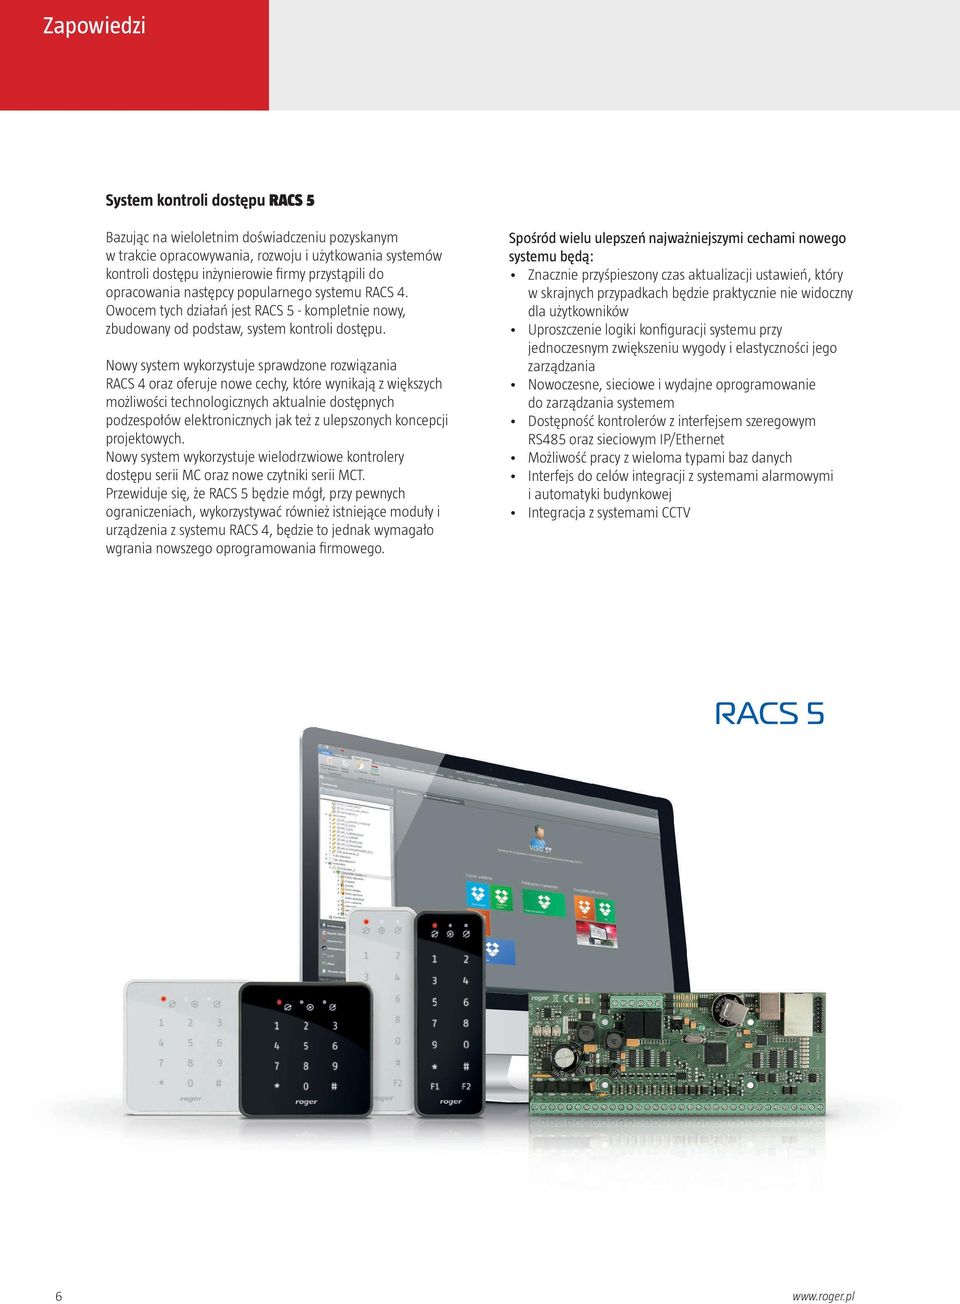 Nowy system wykorzystuje sprawdzone rozwiązania RACS 4 oraz oferuje nowe cechy, które wynikają z większych możliwości technologicznych aktualnie dostępnych podzespołów elektronicznych jak też z